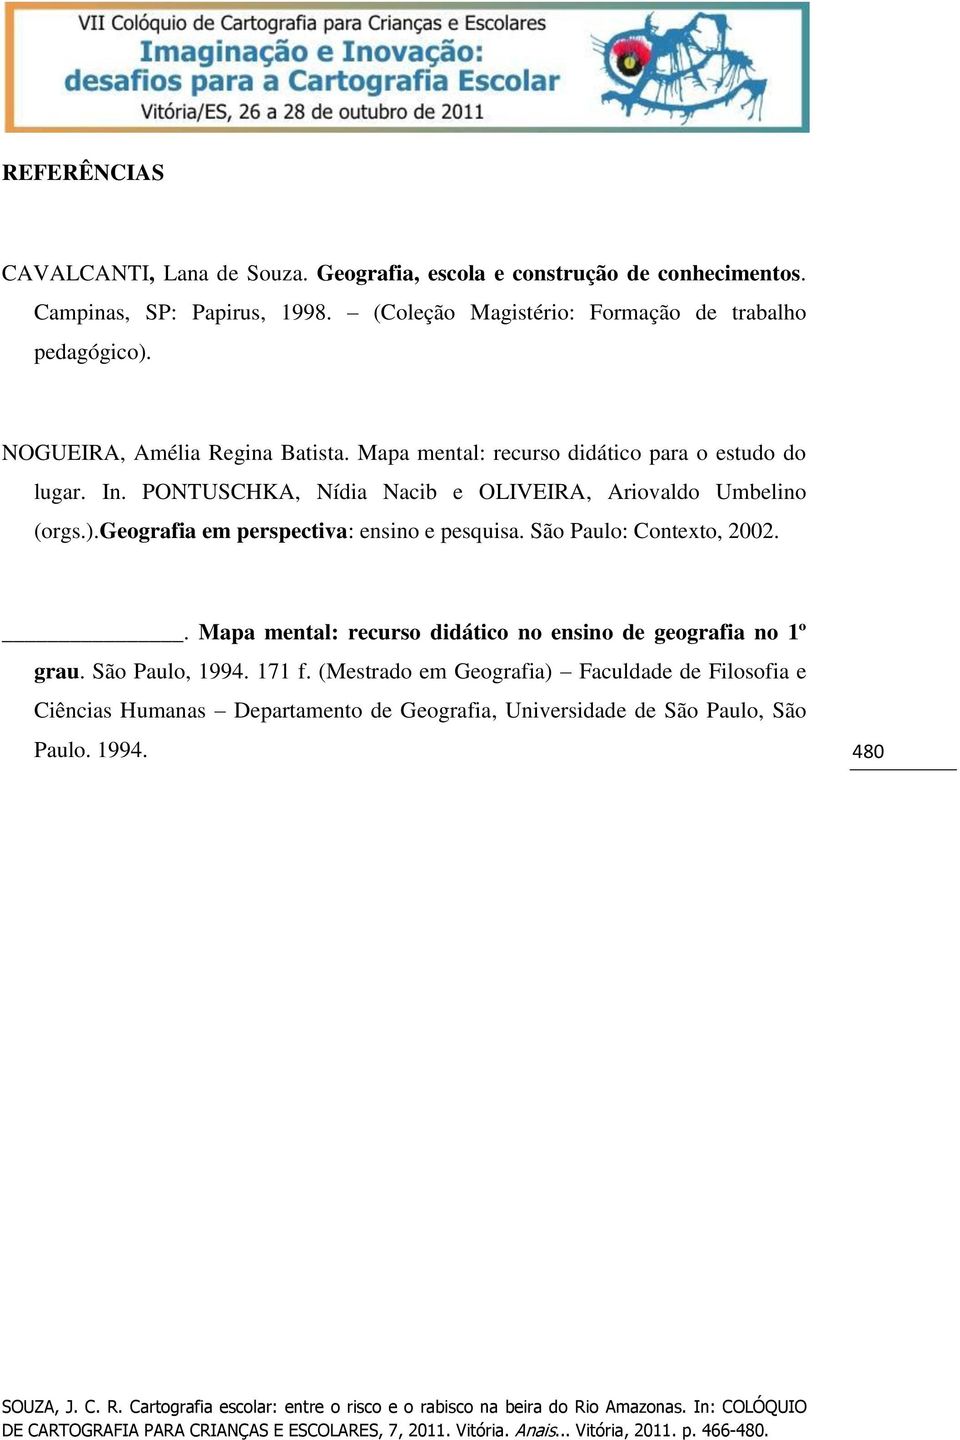 PONTUSCHKA, Nídia Nacib e OLIVEIRA, Ariovaldo Umbelino (orgs.).geografia em perspectiva: ensino e pesquisa. São Paulo: Contexto, 2002.